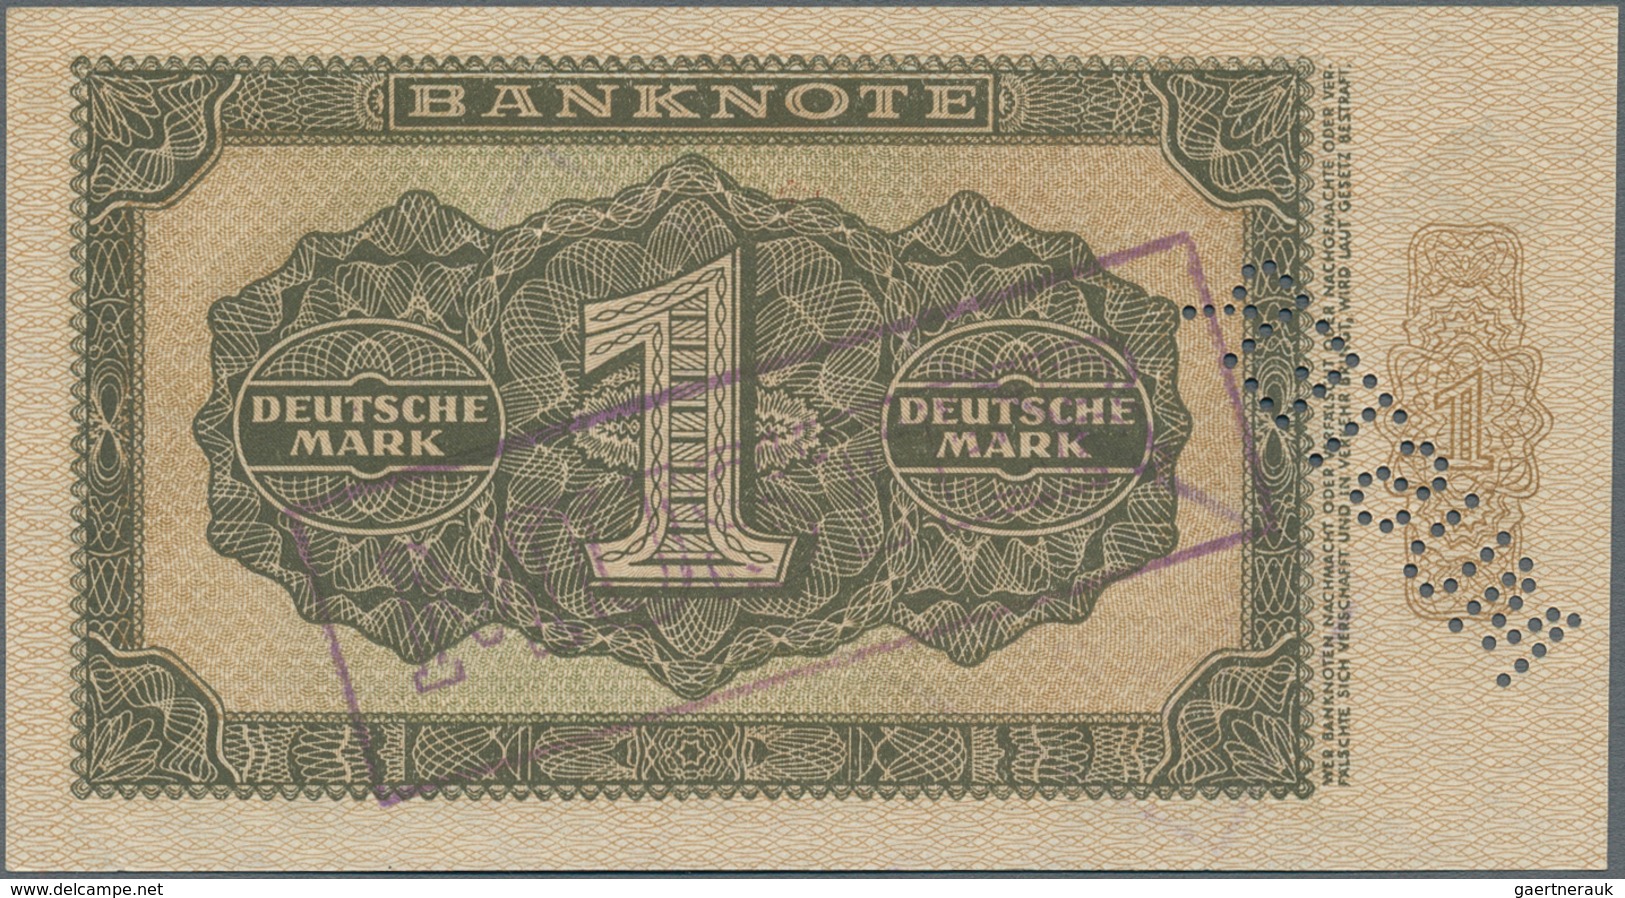 Deutschland - DDR: Mustersatz der Deutschen Notenbank 1948 von 50 Pfennig bis 1000 Mark 1948, alle a